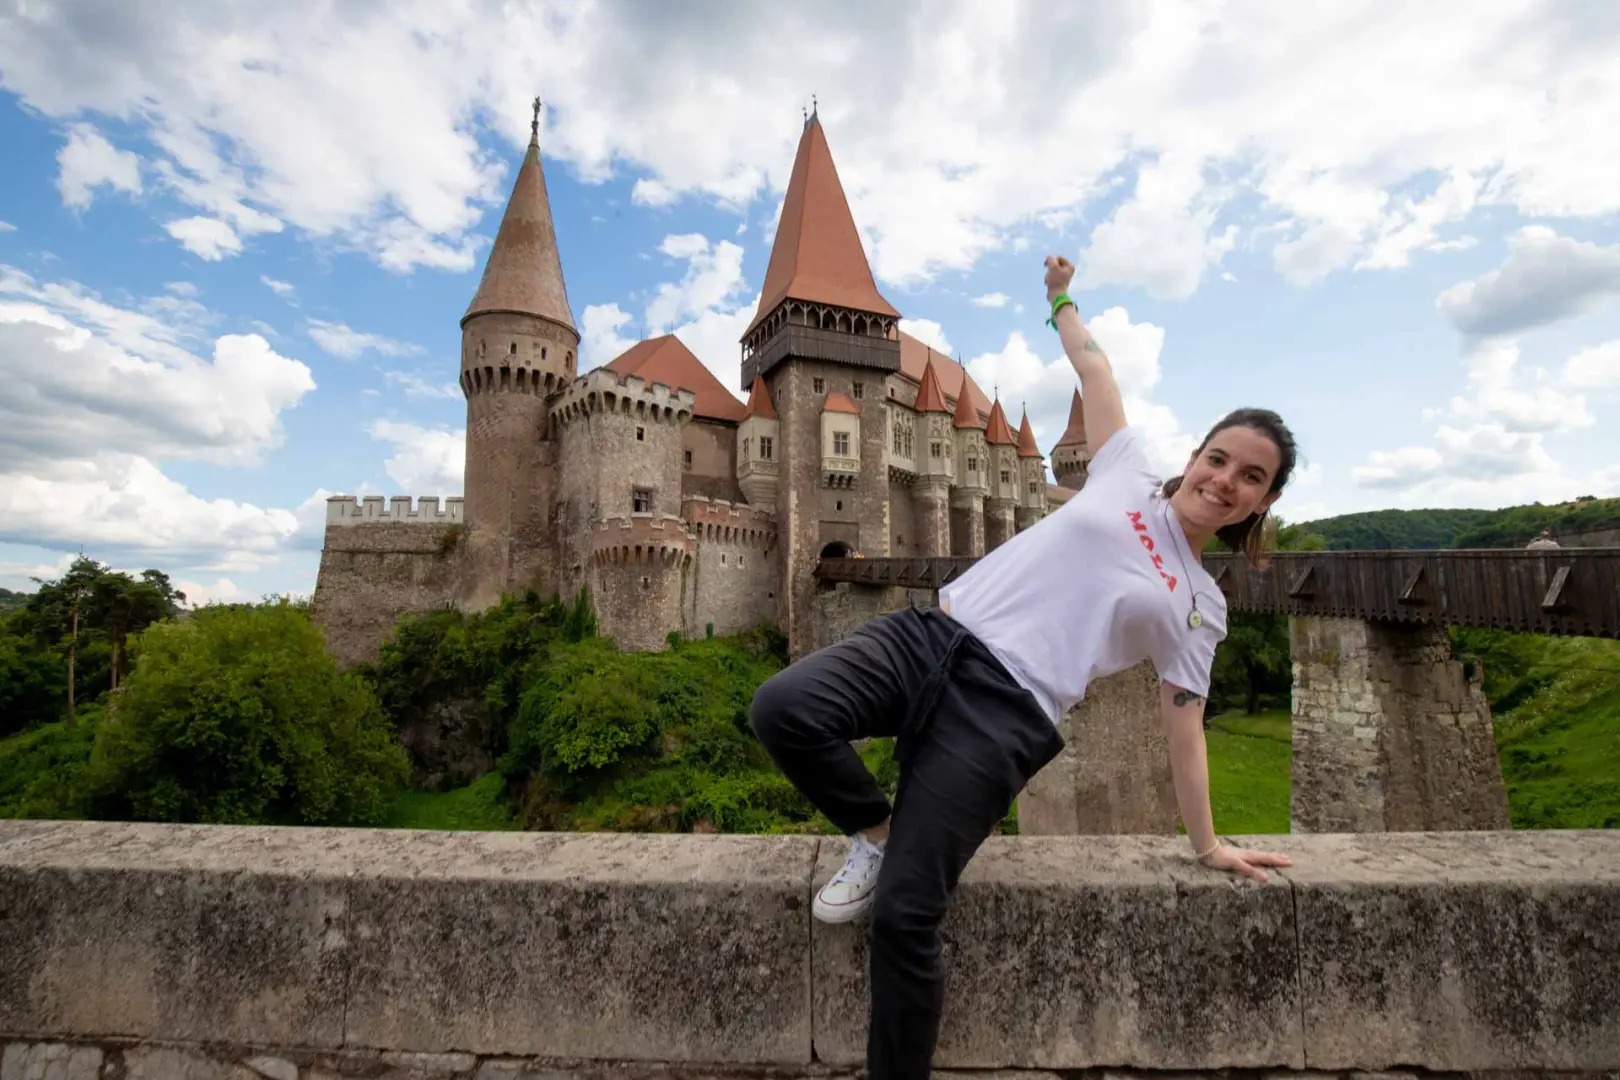 Descubre los misterios de este increíble país lleno de leyendas y castillos. Saliendo desde Bucarest, yendo a Sibiu, Rasnov y Brasov en Transilvania